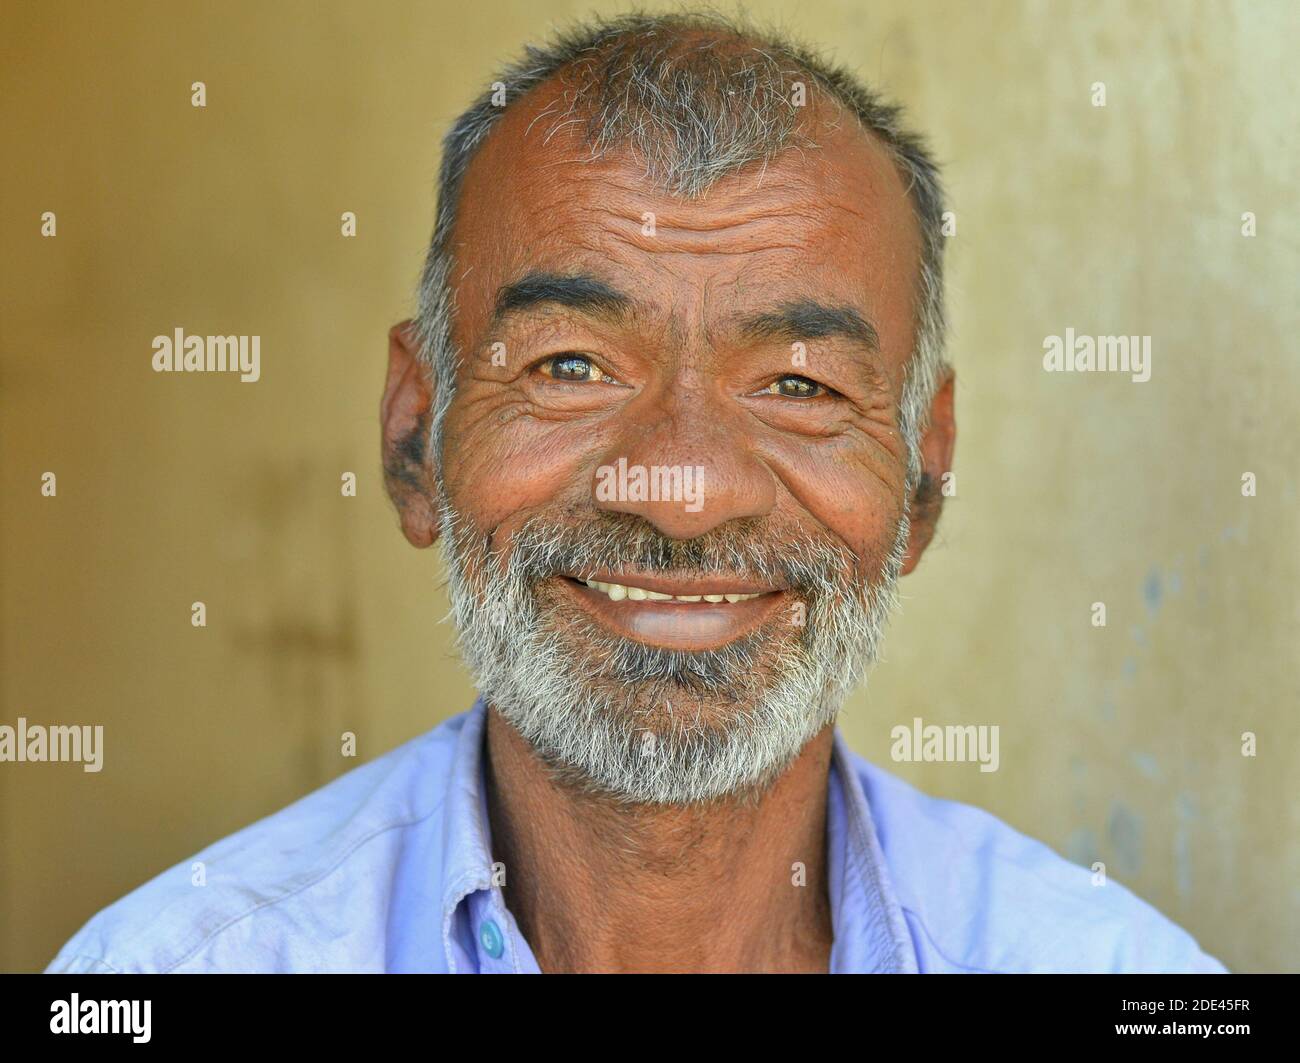 Glücklich positive mittleren Alters indischen Gujarati Mann mit kurzen Haaren lächelt für die Kamera. Stockfoto